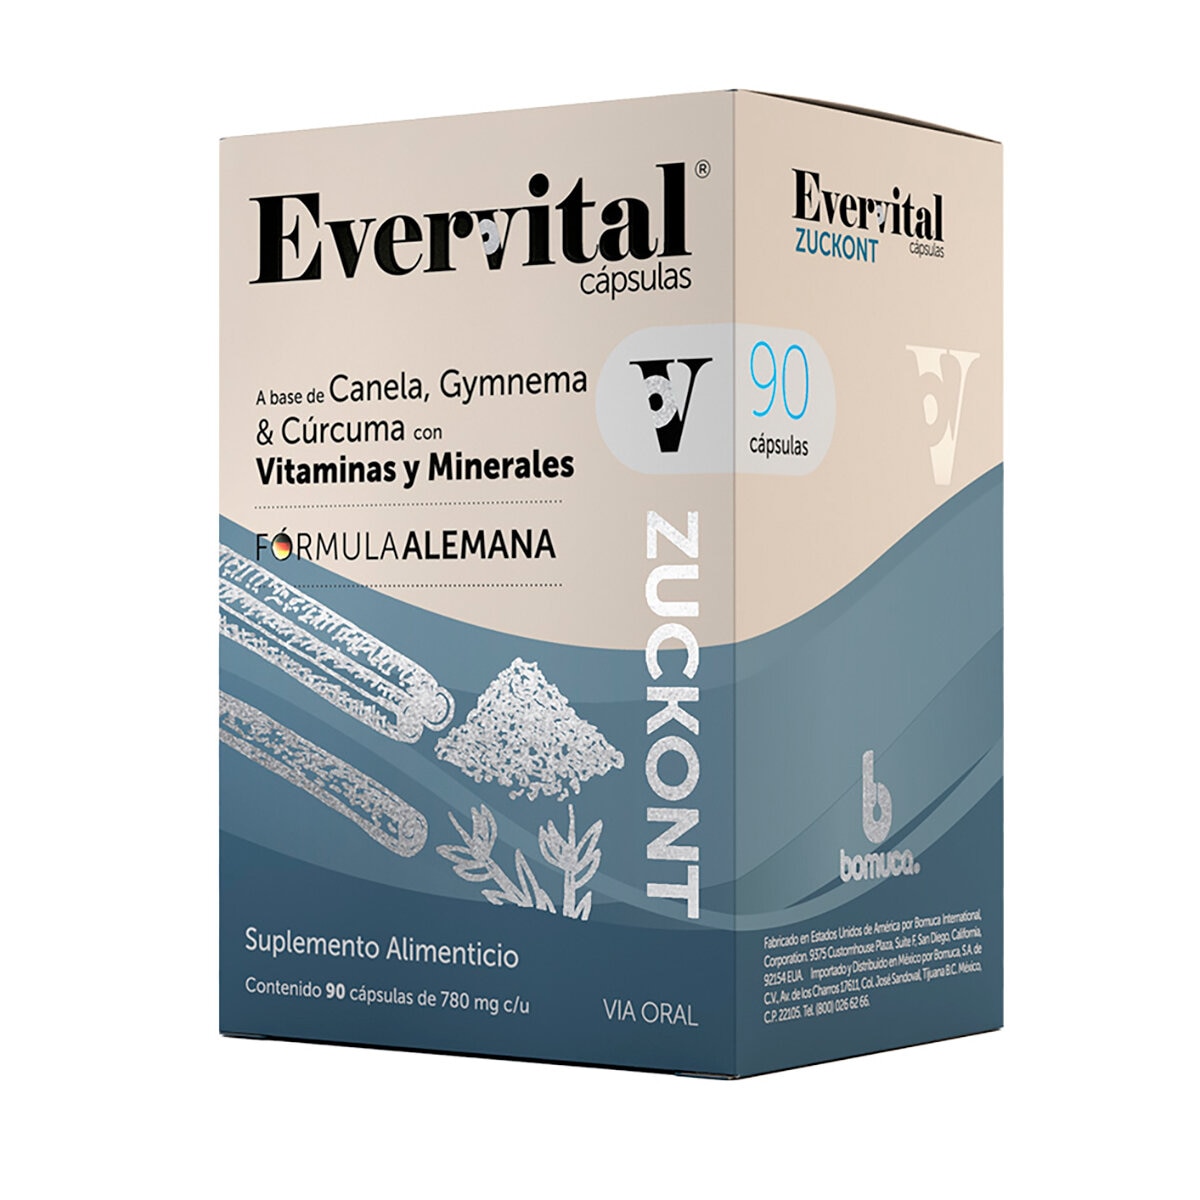 Evervital Zuckont a Base de Canela Gymnema Vitaminas y Minerales 90 Cápsulas